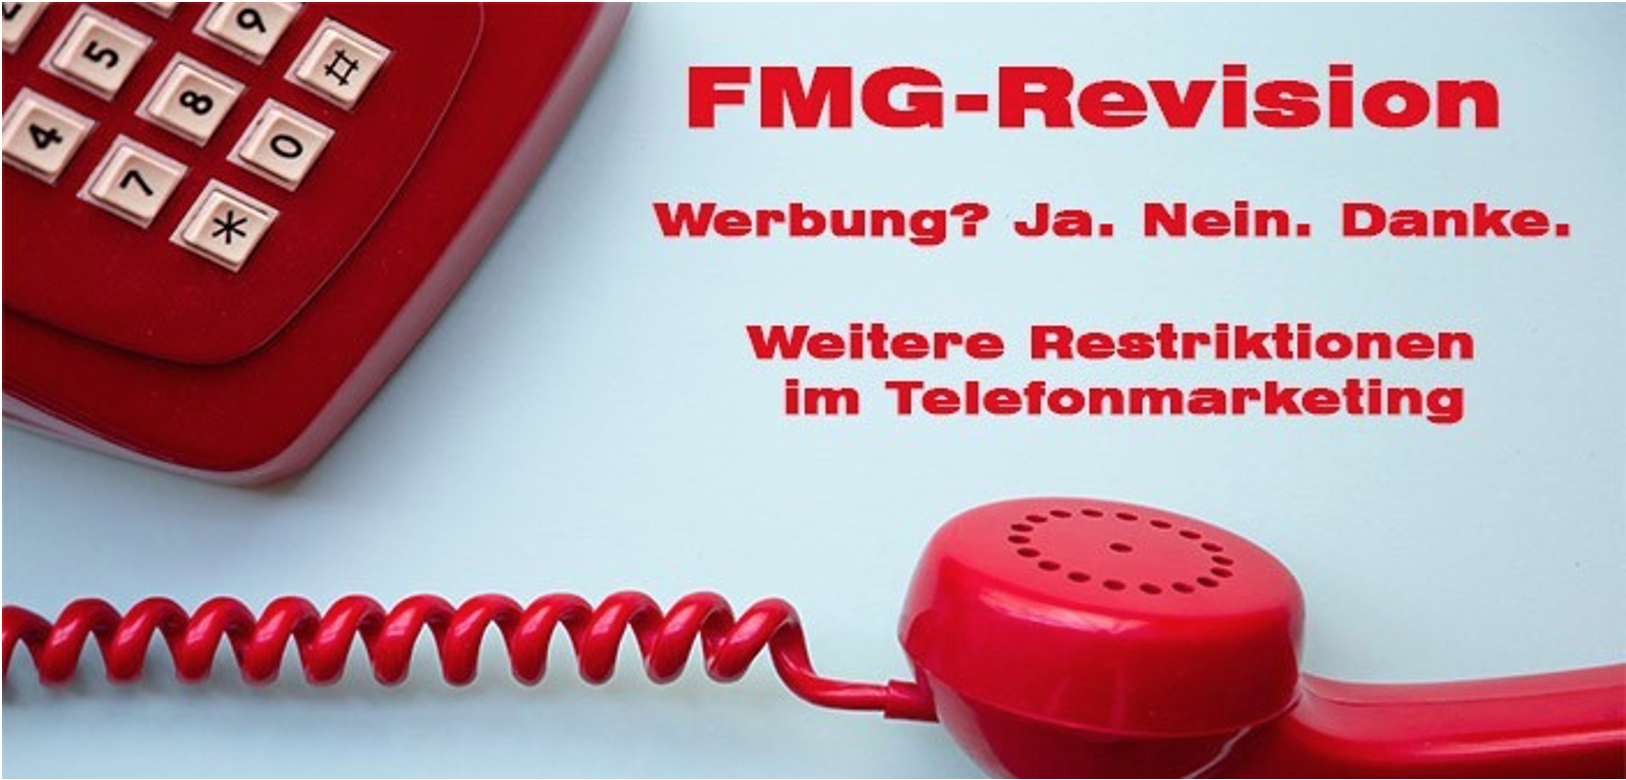 FMG-Revision – Neue Restriktionen für Telefonmarketing-Branche